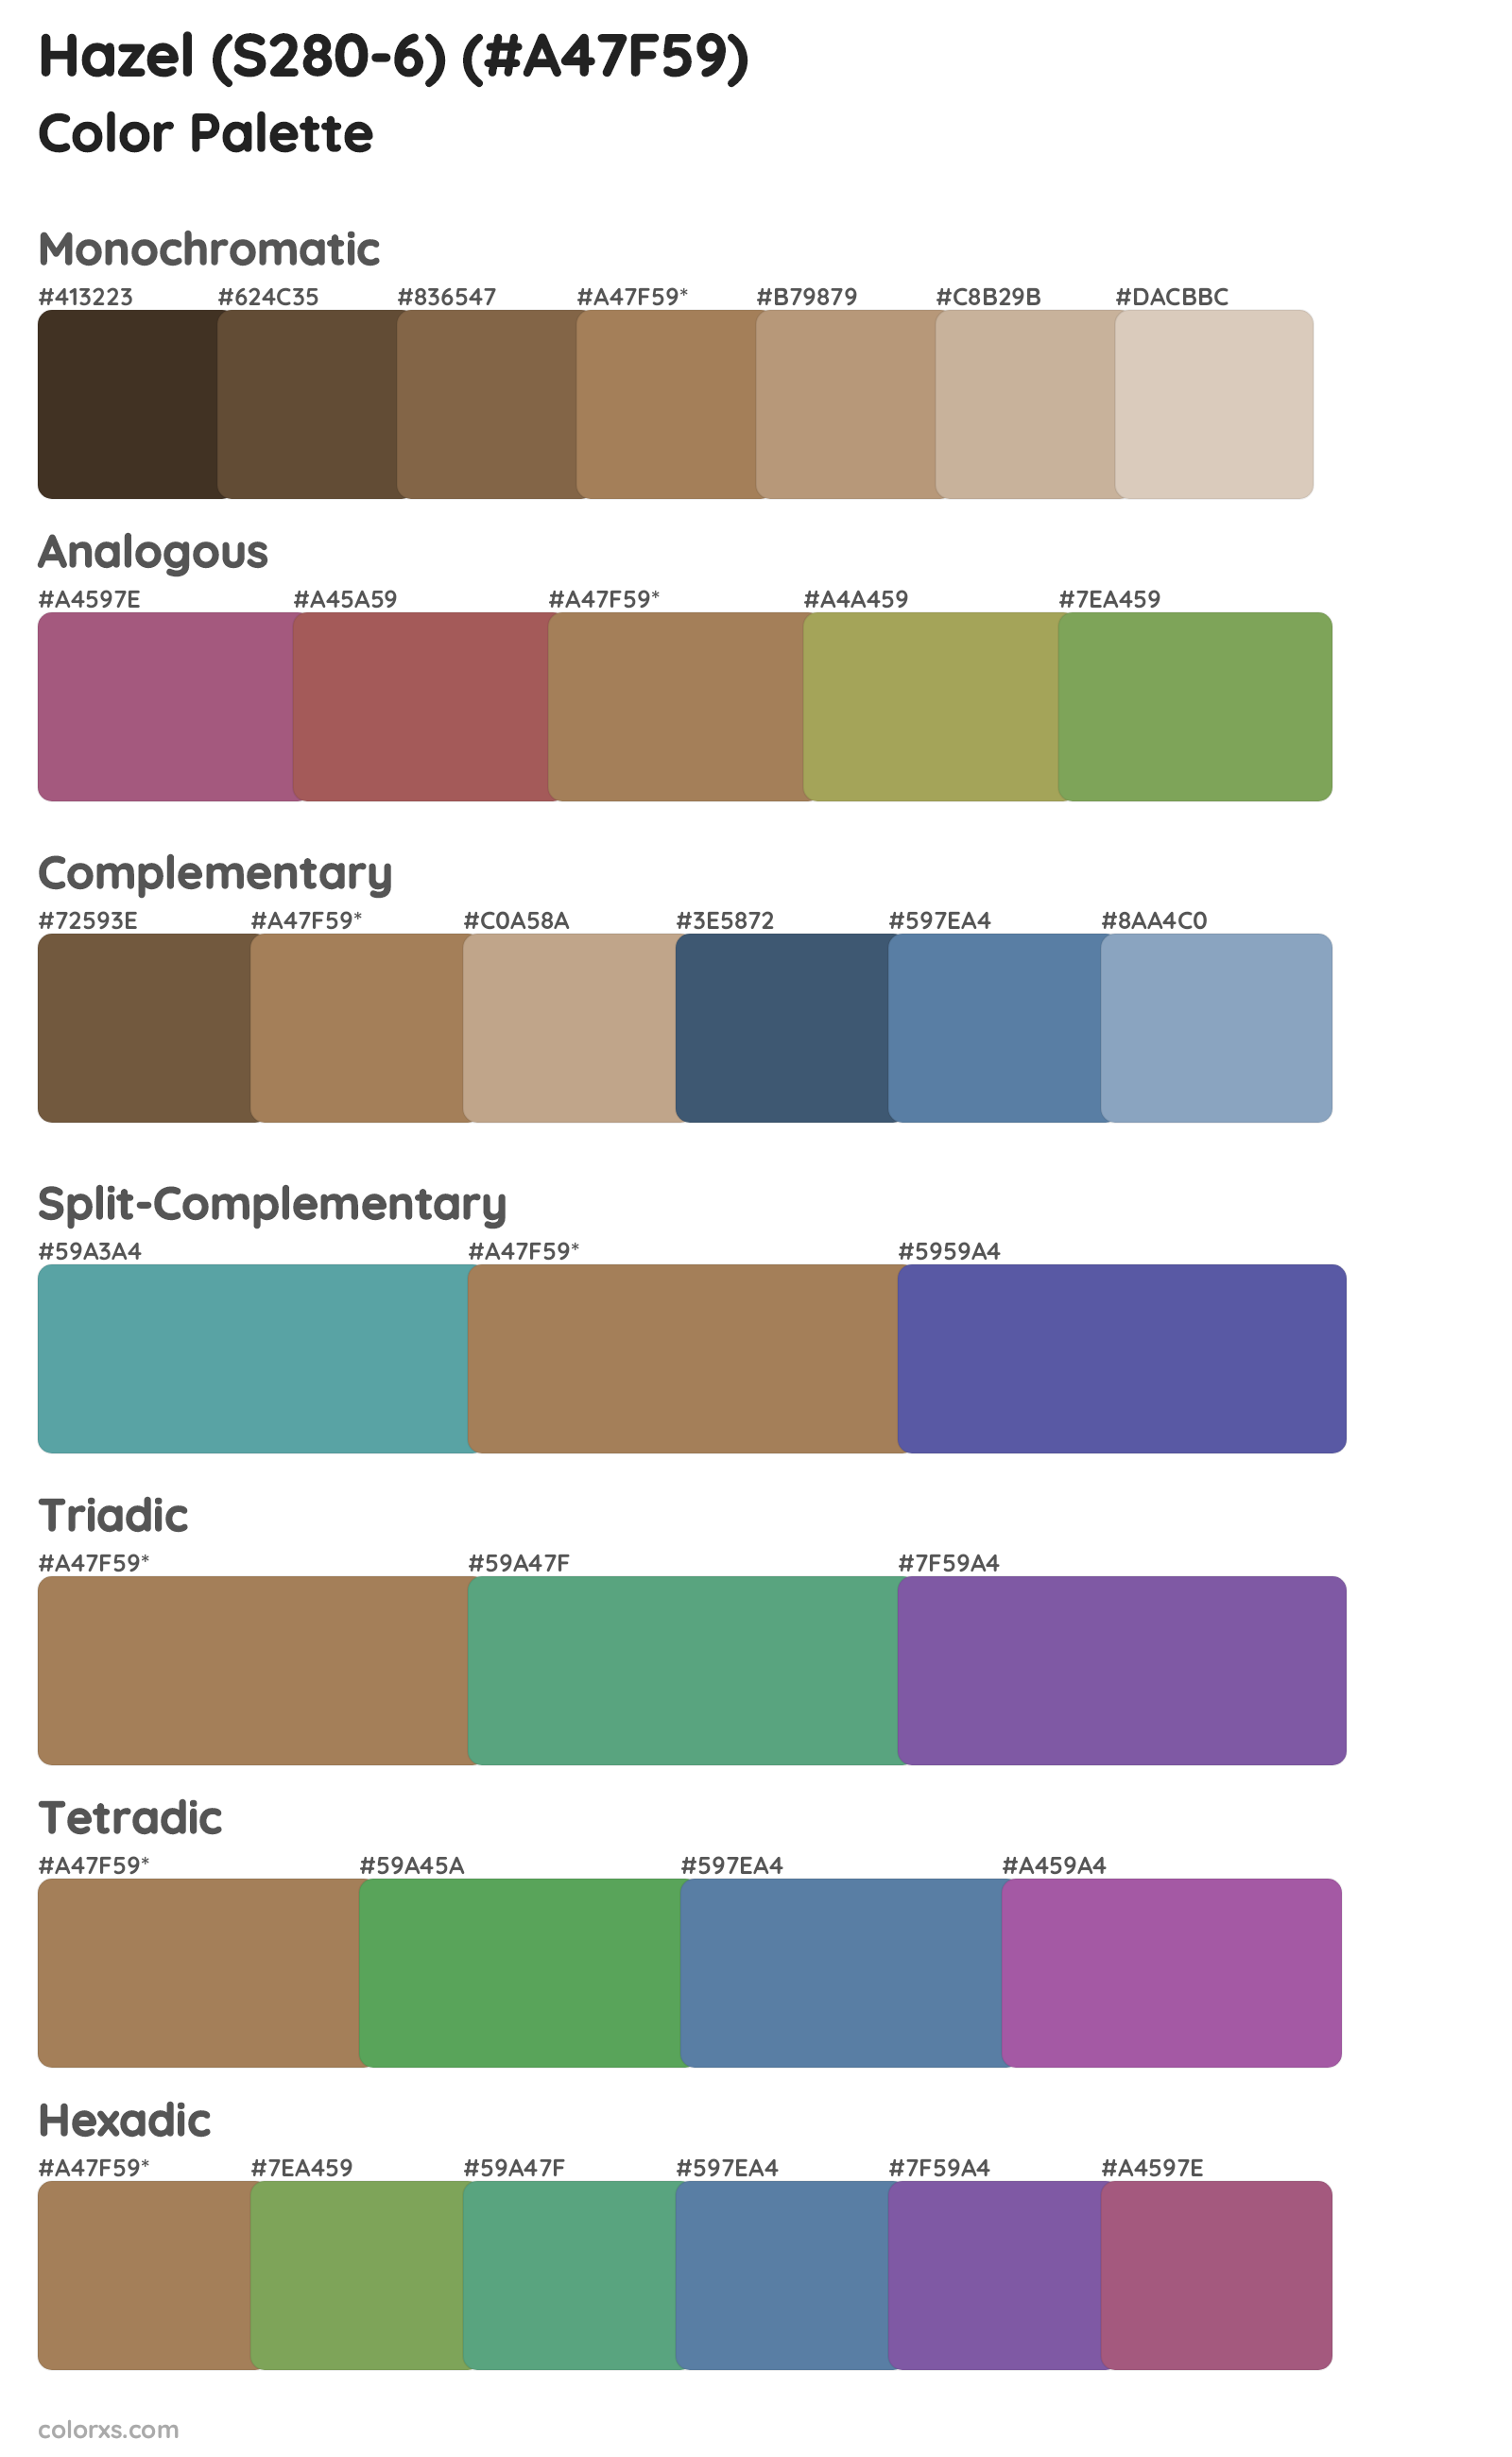 Hazel (S280-6) Color Scheme Palettes